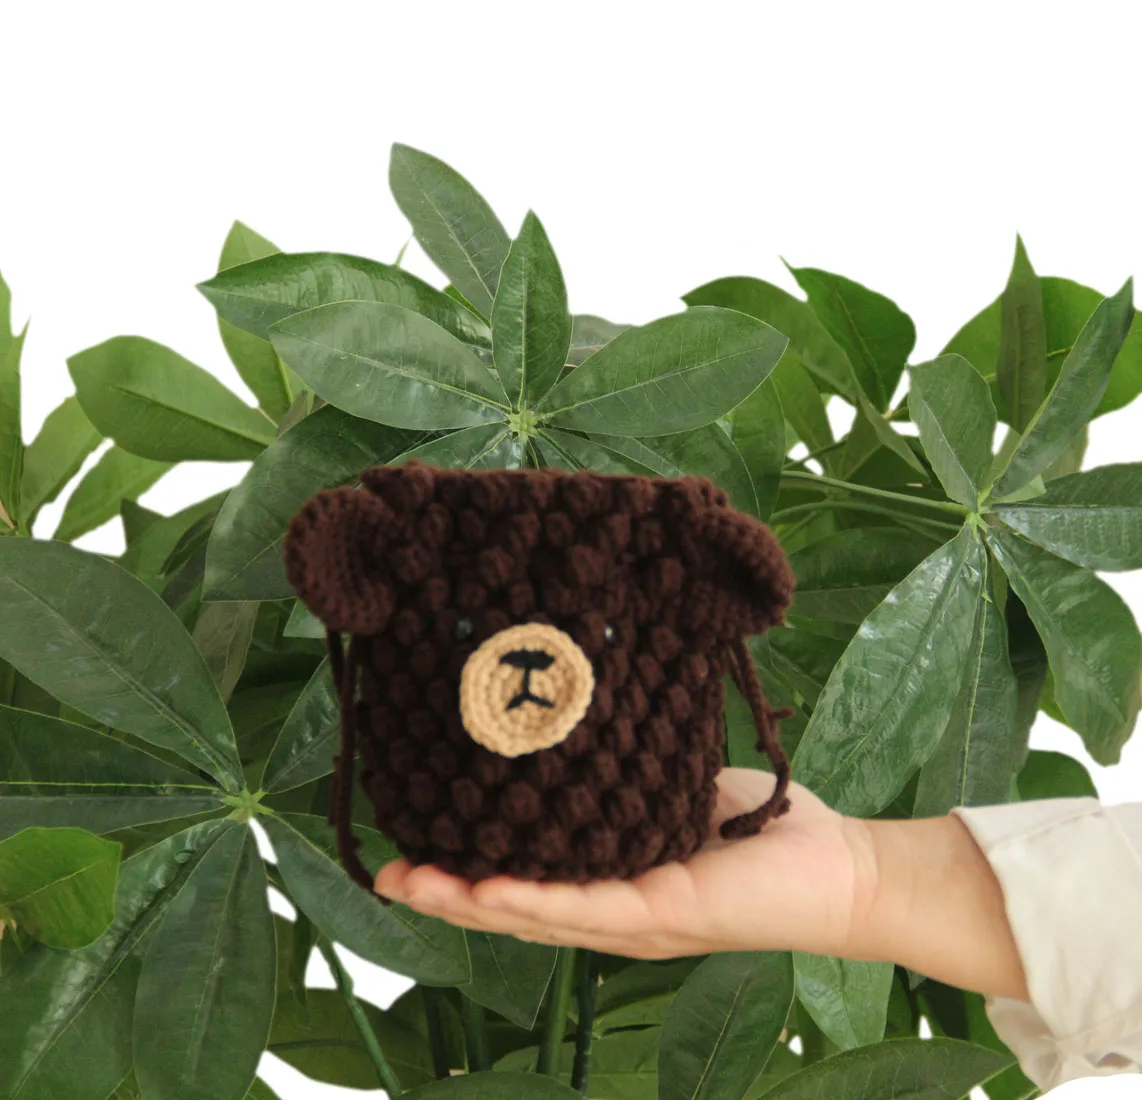 Вязаная арт-сумка BomHCS, кошелек с коричневым медведем, сумка для хранения через плечо от AliExpress WW